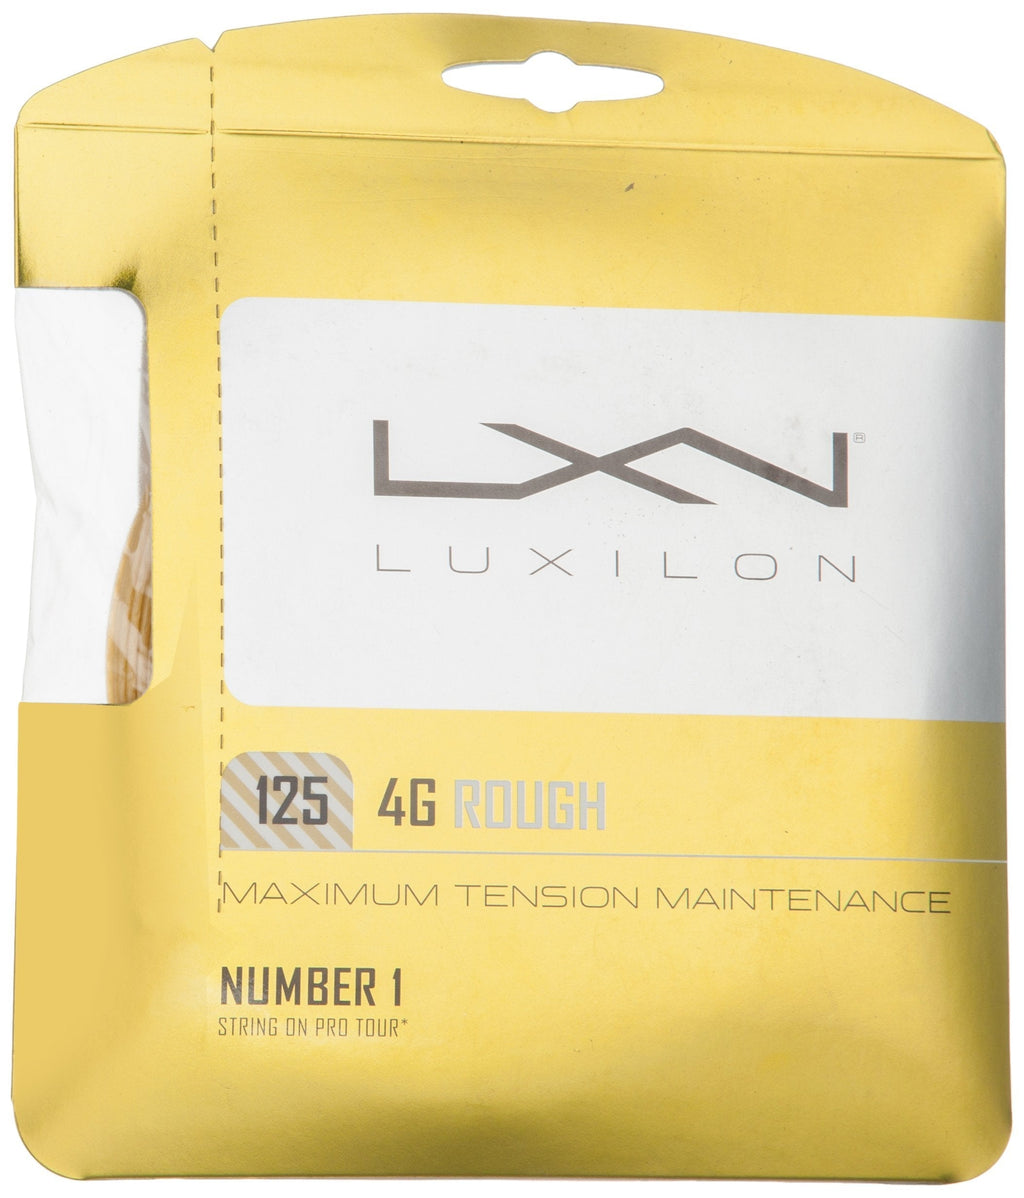 [AUSTRALIA] - Luxilon 4G Rough Tennis String, Gold, 16L Gauge/1.25mm 